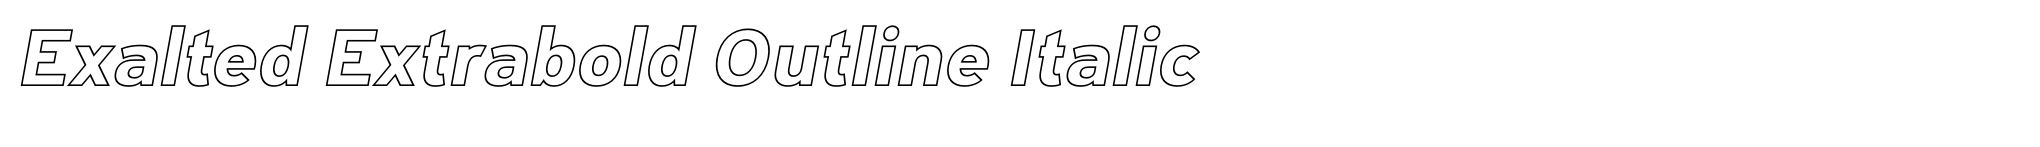 Exalted Extrabold Outline Italic image